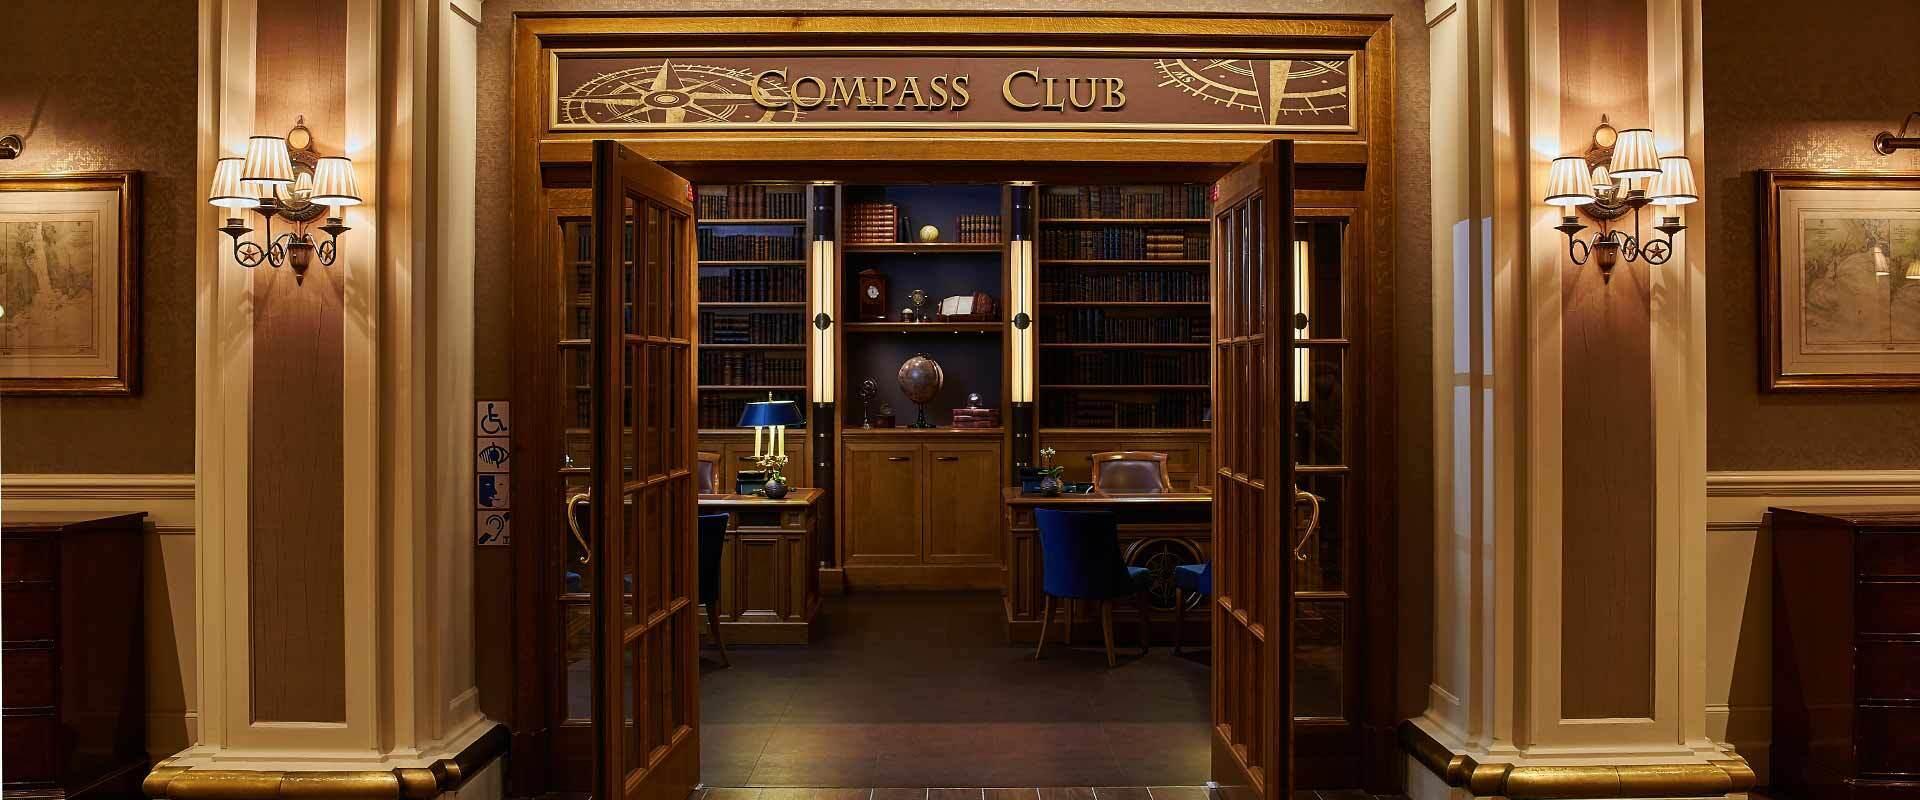 Camere Club, Suite e una Compass Club Lounge pensata per il capitano